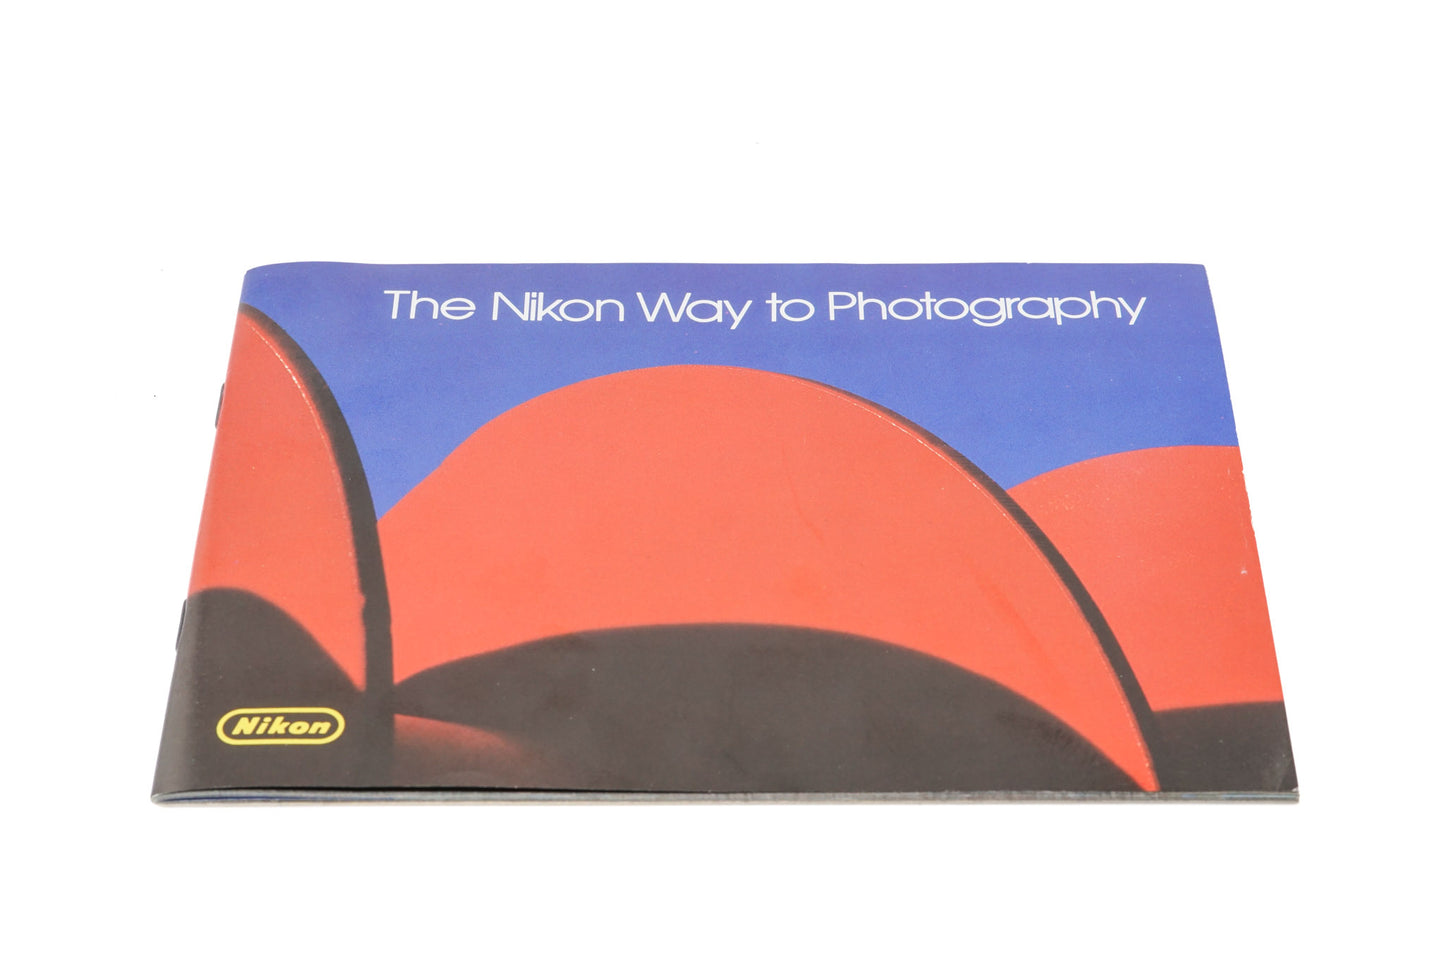 Nikon "The Nikon Way to Photography" Booklet